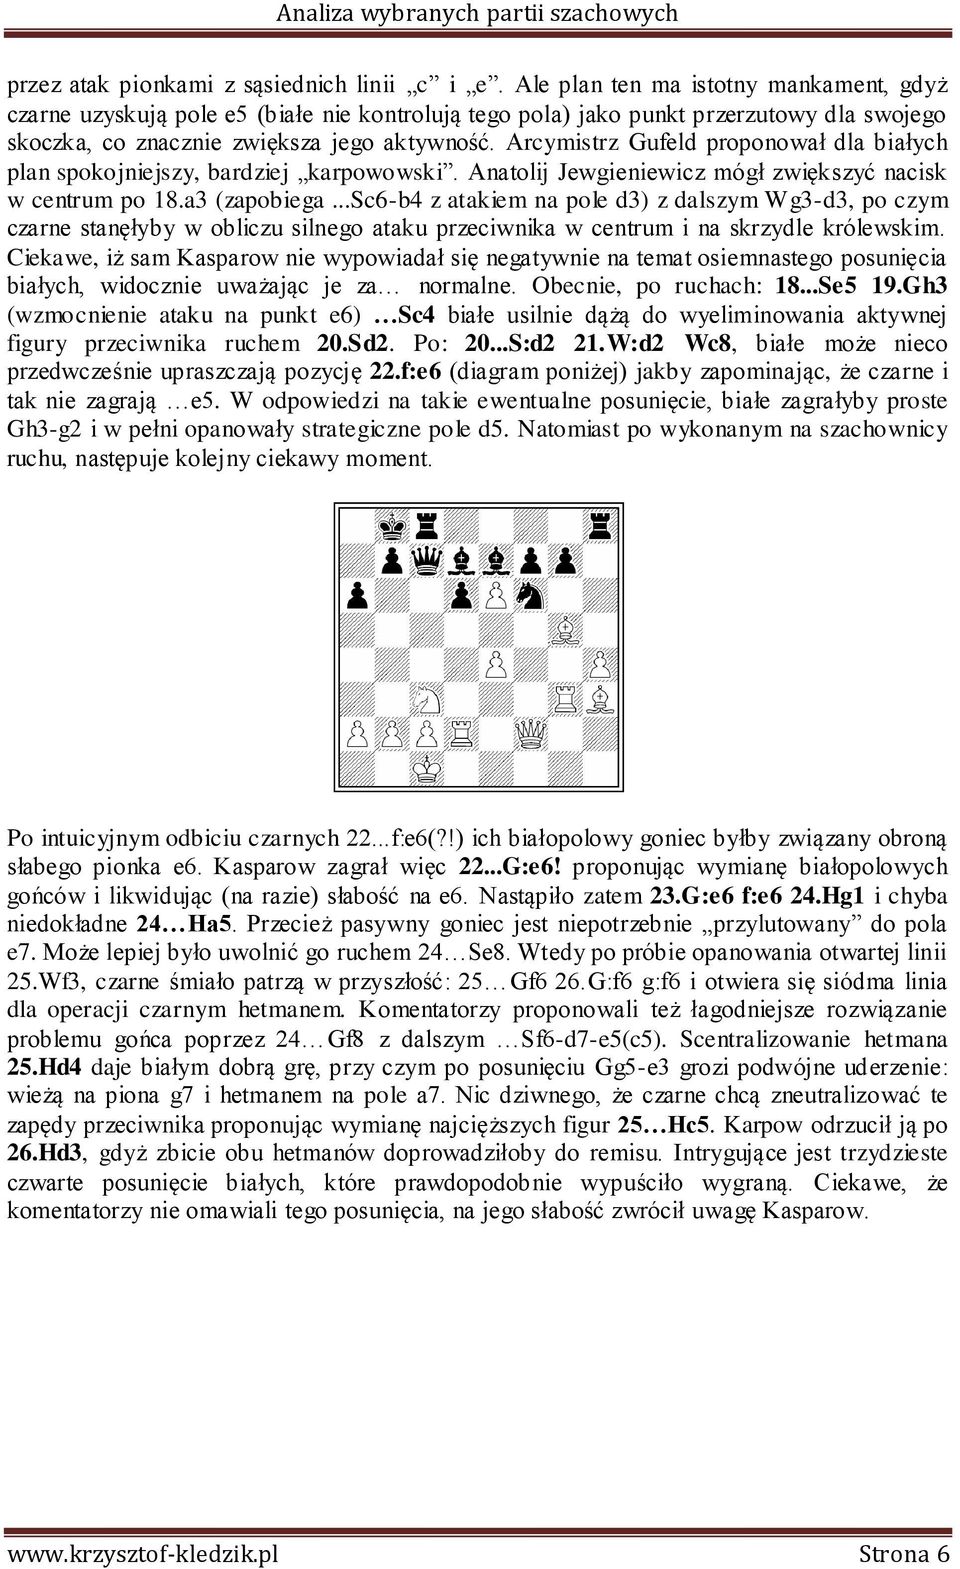 Arcymistrz Gufeld proponował dla białych plan spokojniejszy, bardziej karpowowski. Anatolij Jewgieniewicz mógł zwiększyć nacisk w centrum po 18.a3 (zapobiega.